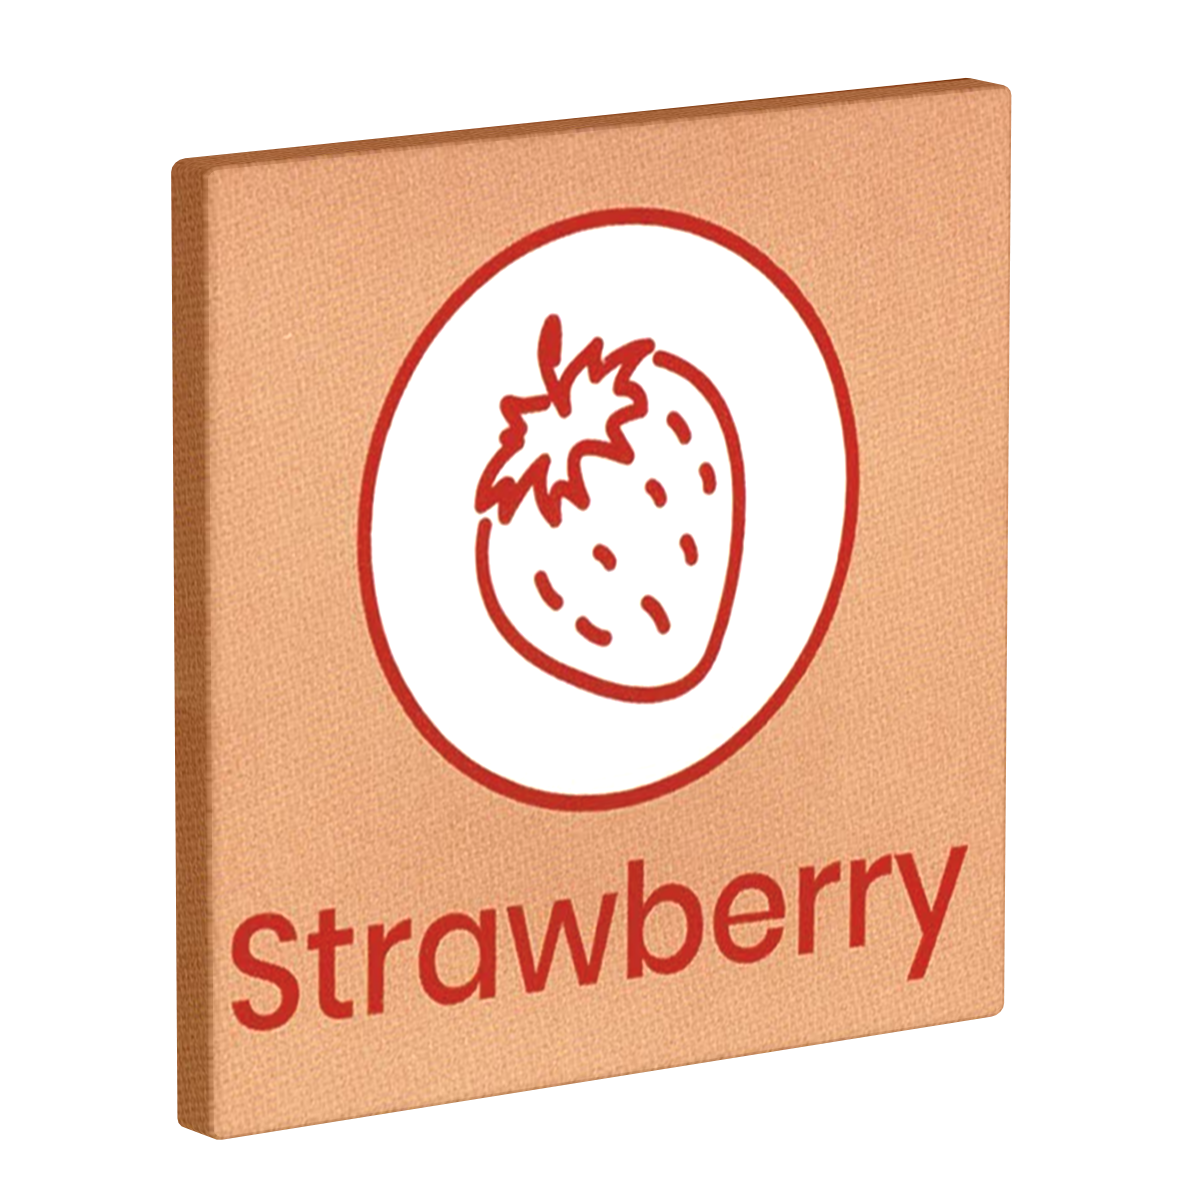 Lovelyness «Strawberry» 1 leckeres Kondom mit extrem fruchtigem Erdbeer-Geschmack beim Akt der Liebe